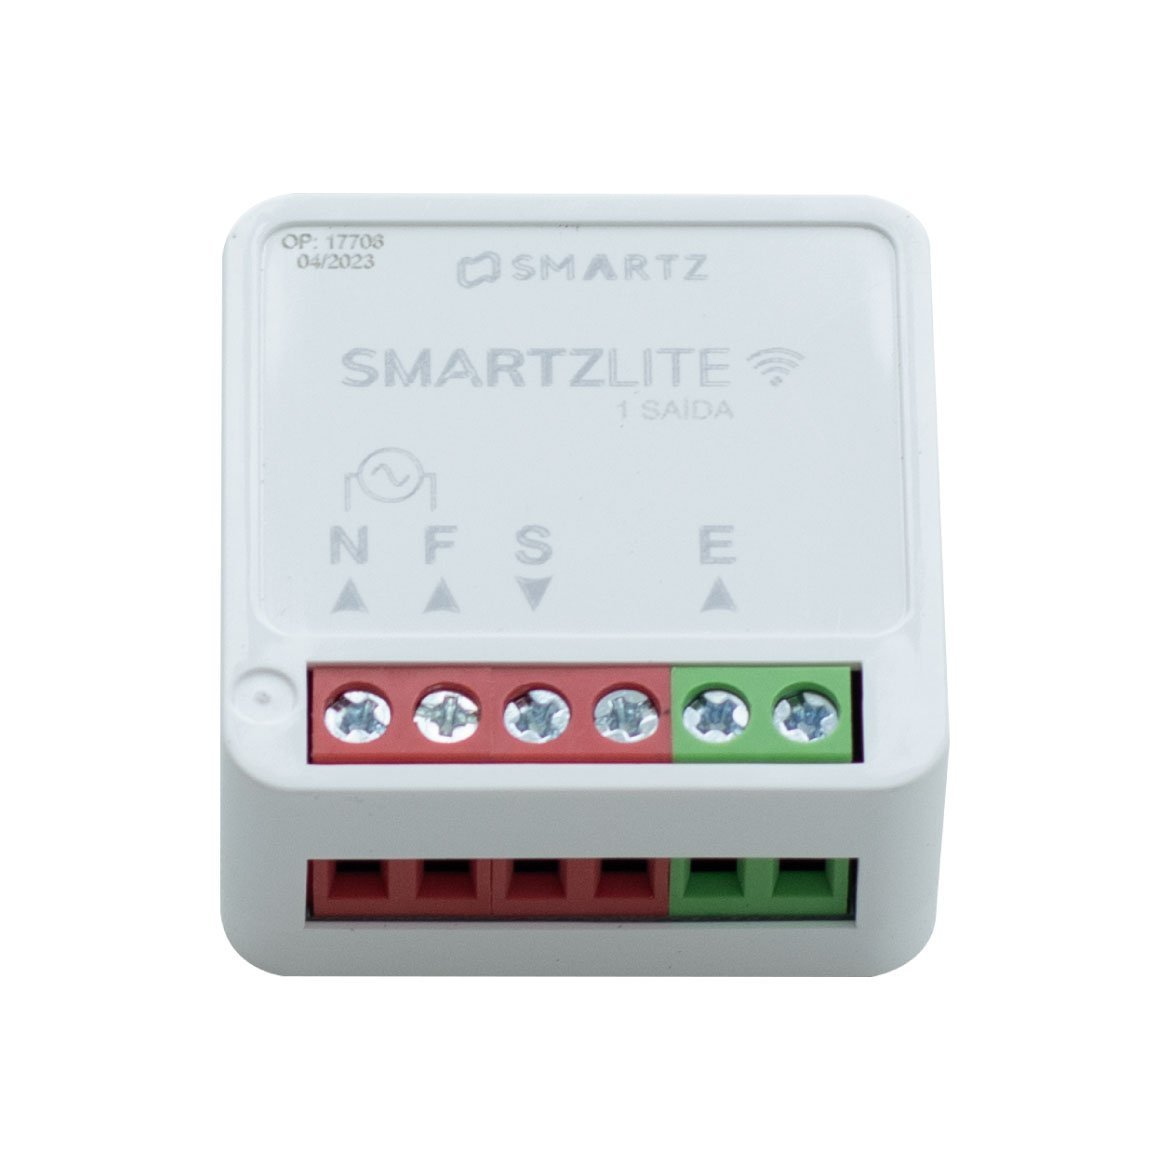 Controlador Programável Smartz Lite 1 Canal Stz1391n St2917